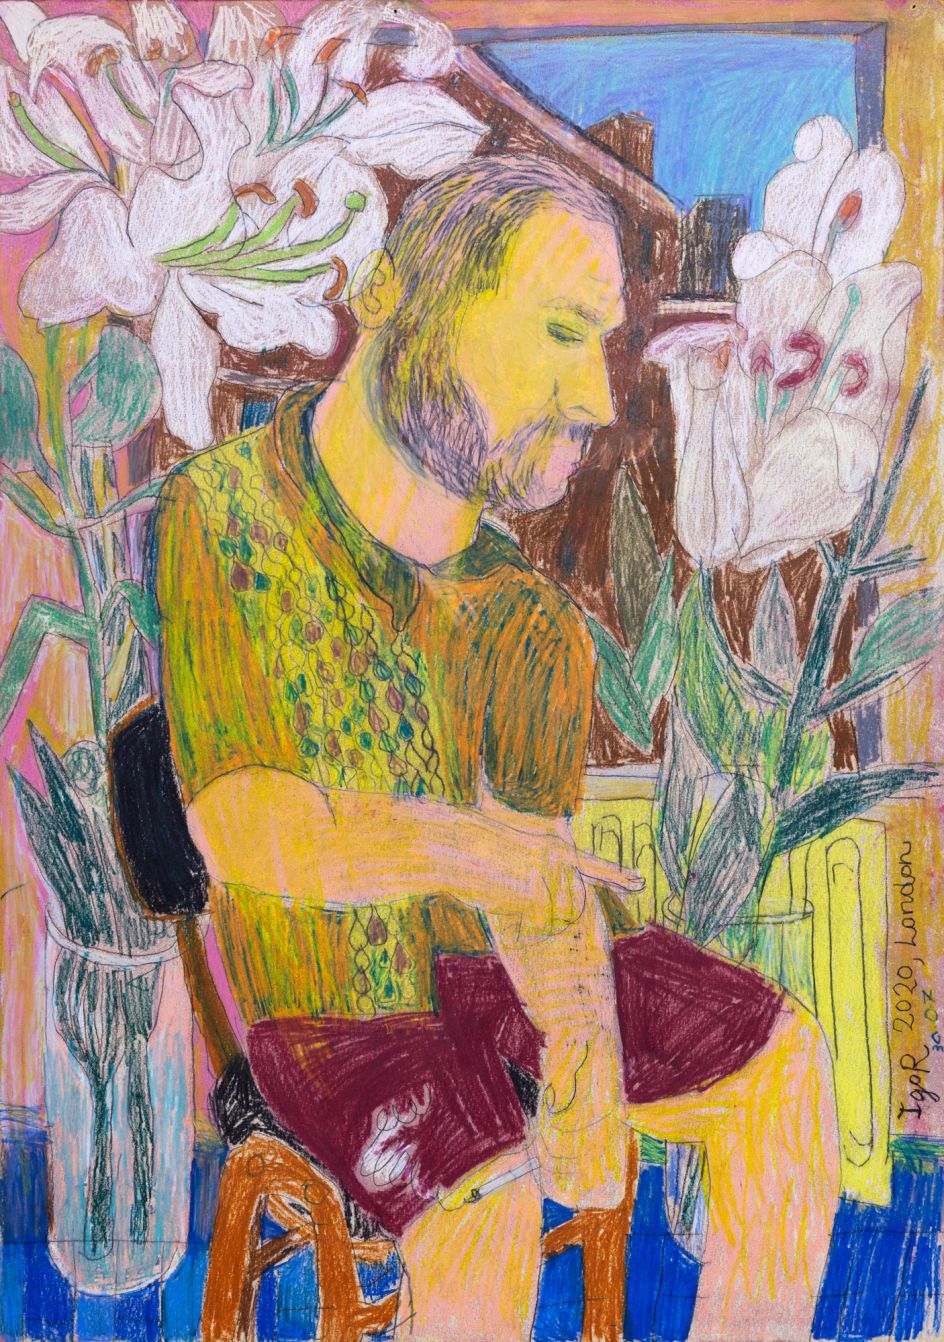 Igor Moritz, Kuba smoking with Lilies, 2020 - Delphian Gallery